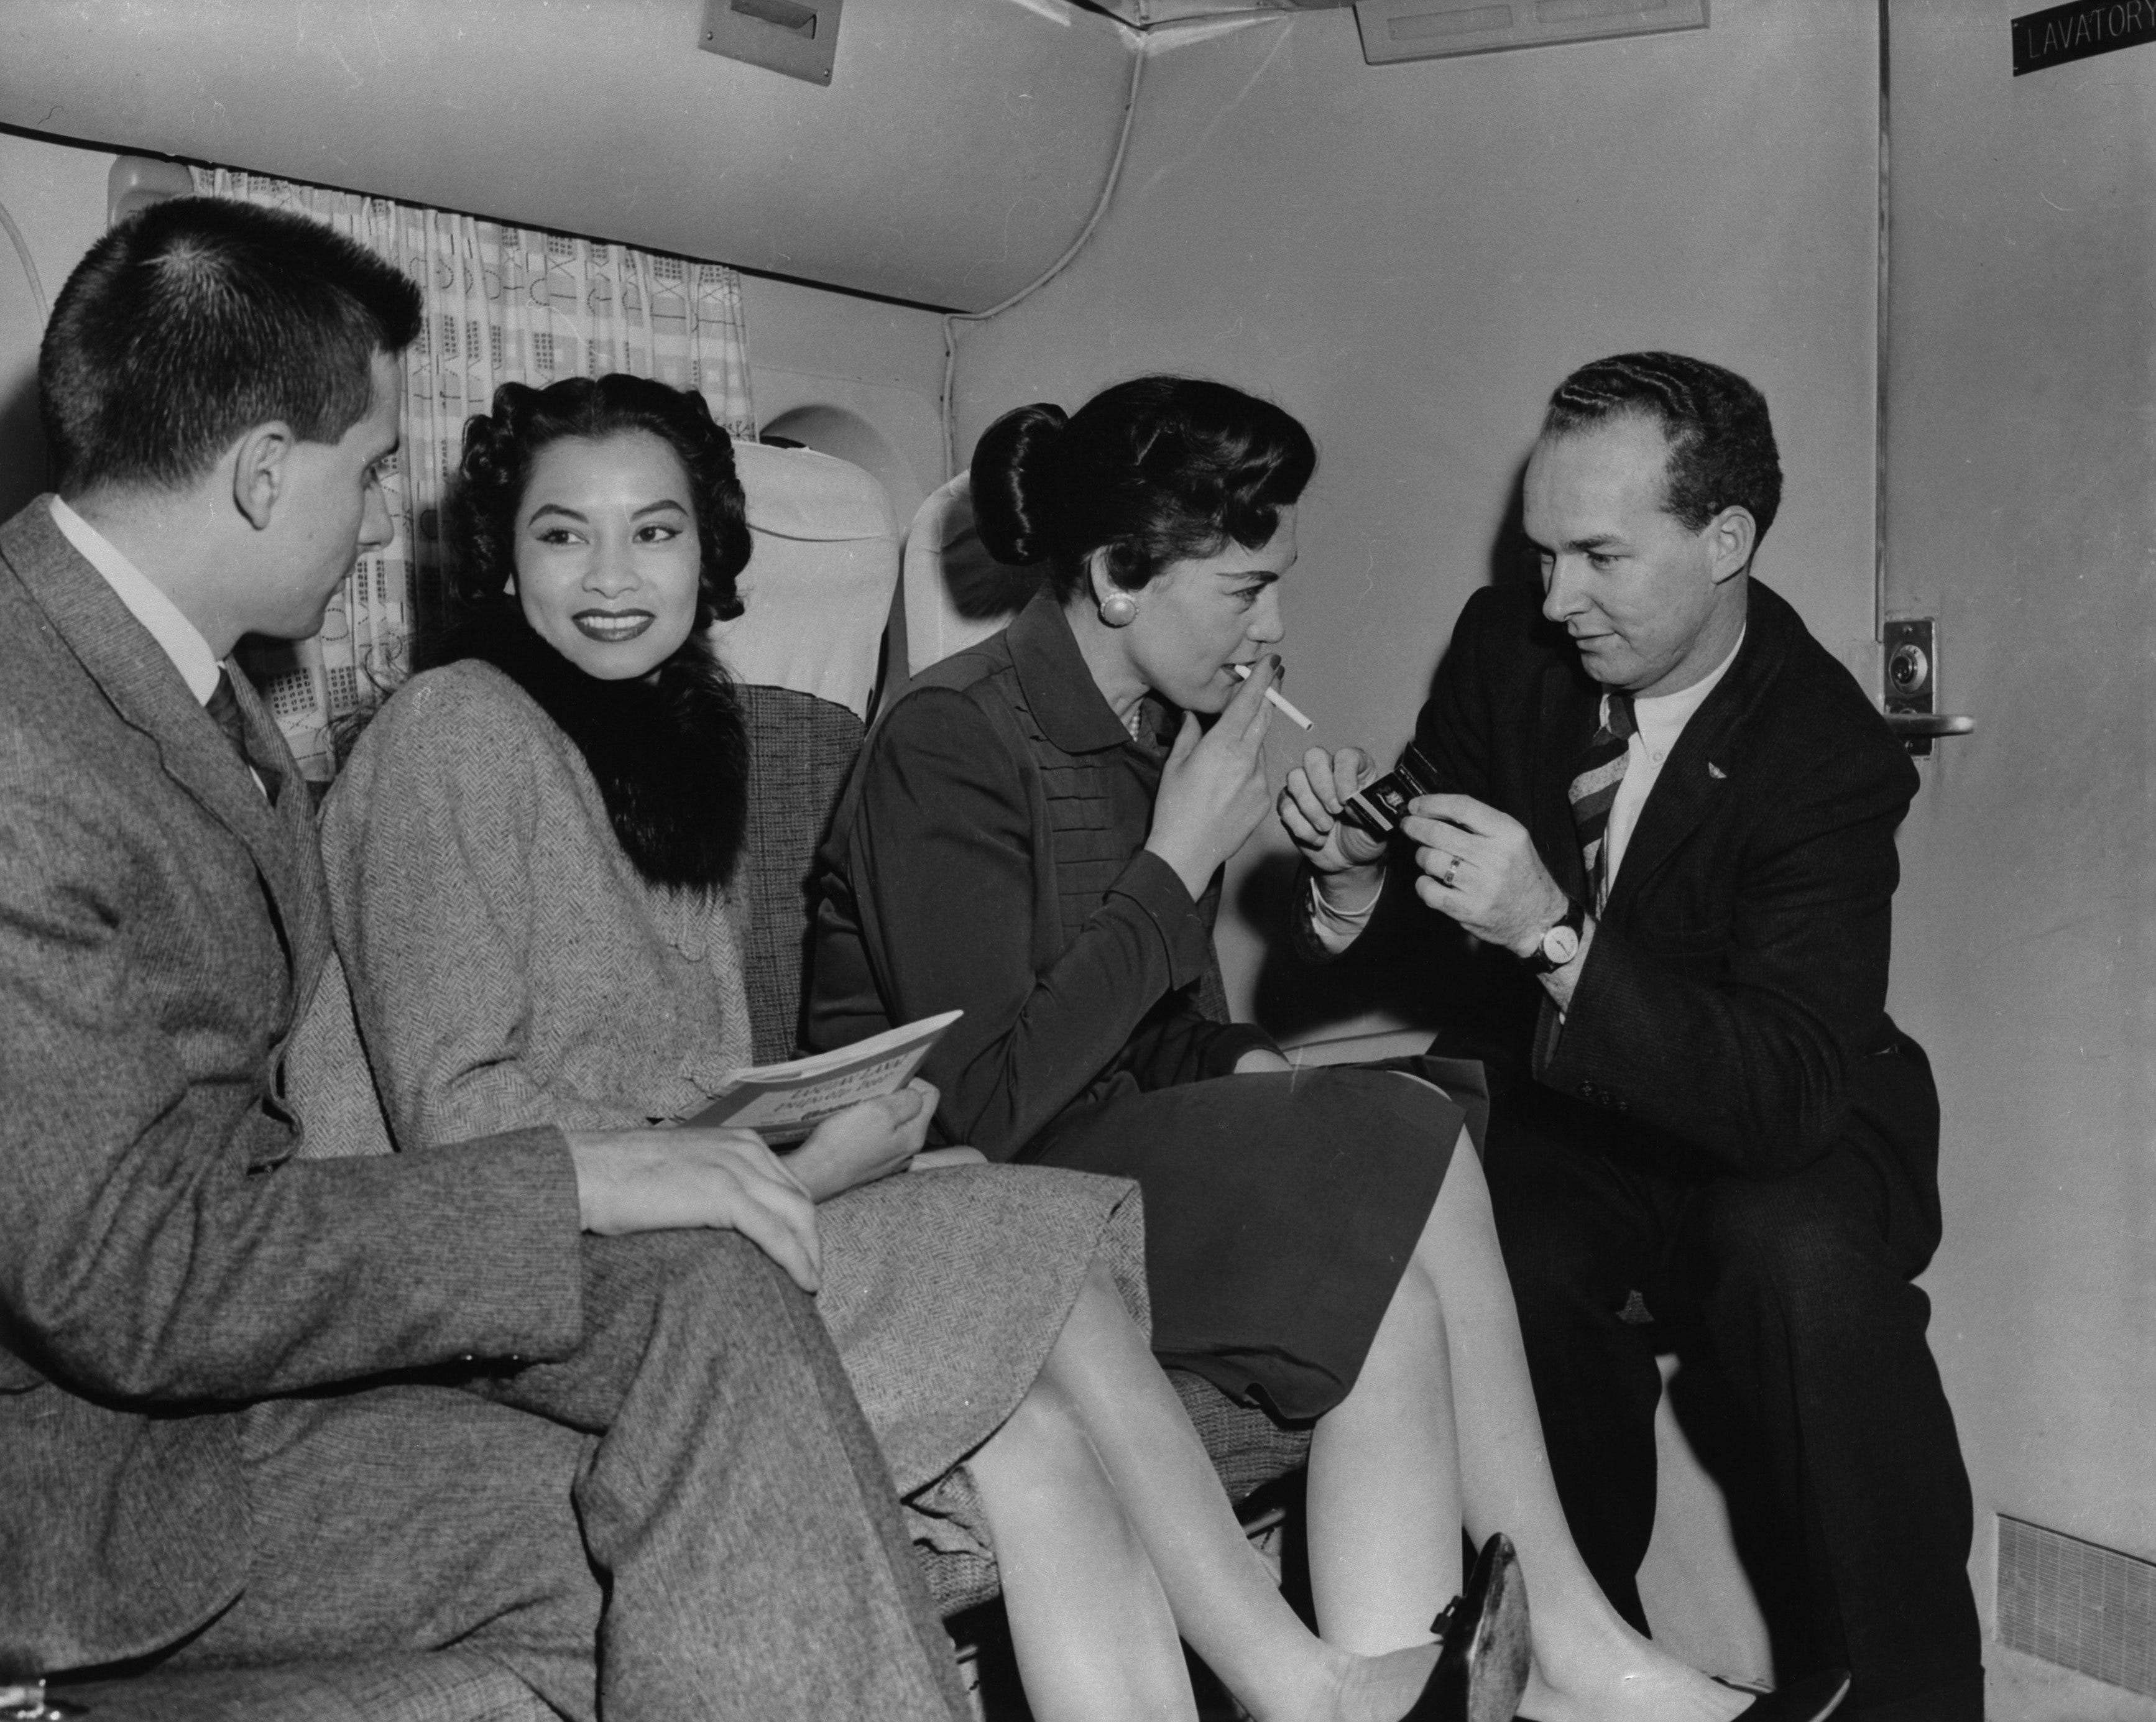 Passagiere rauchen in einem Flugzeug in den 1950er Jahren